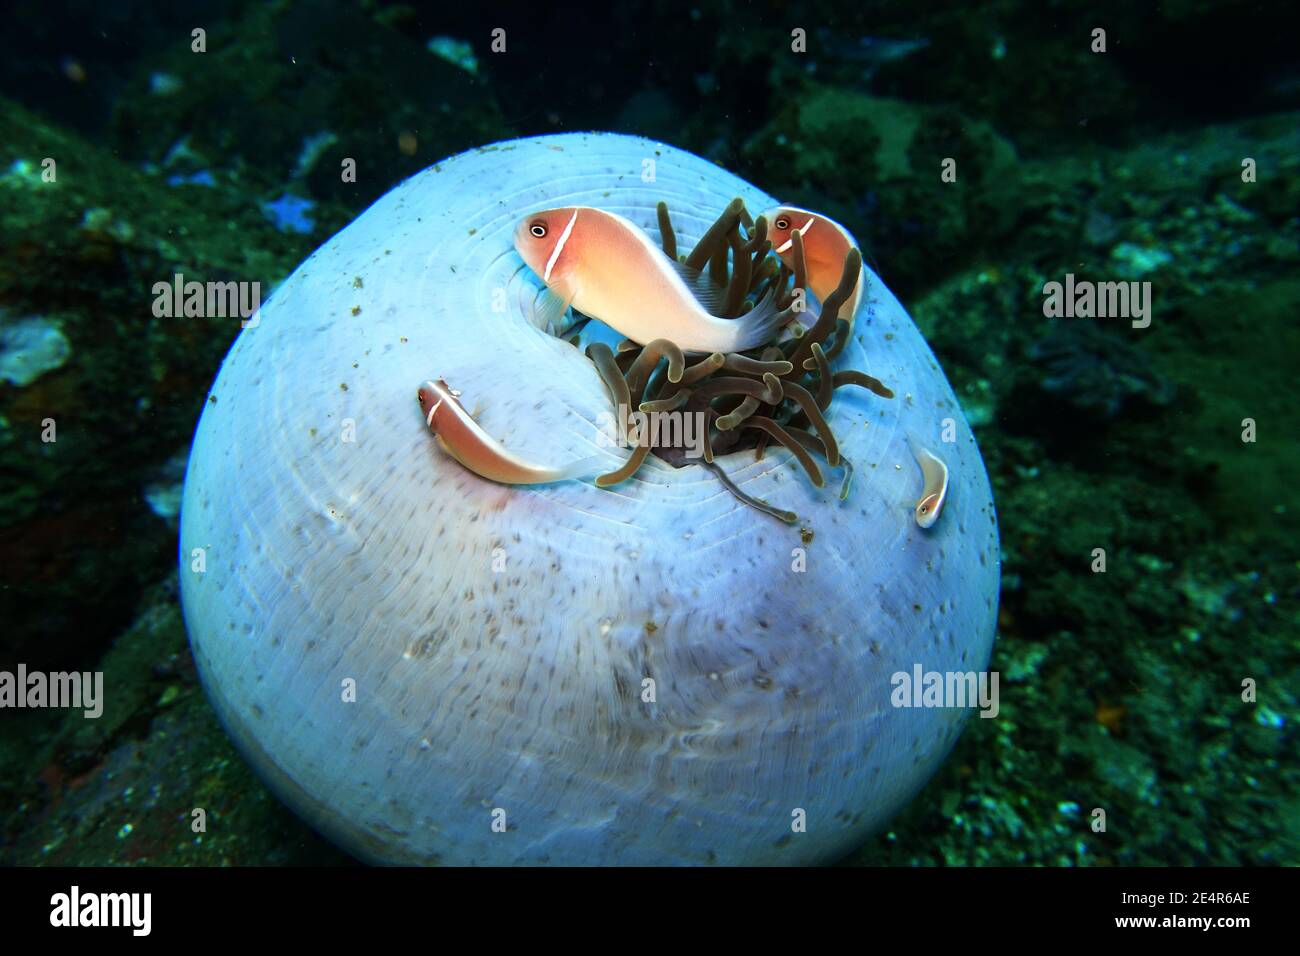 Halsband-Anemonenfisch oder Rosa Weißrückenanemonenfisch (Amphiprion perideraion) auf einer fast geschlossenen Prachtanemone (Heteractis magnifica), L Stock Photo